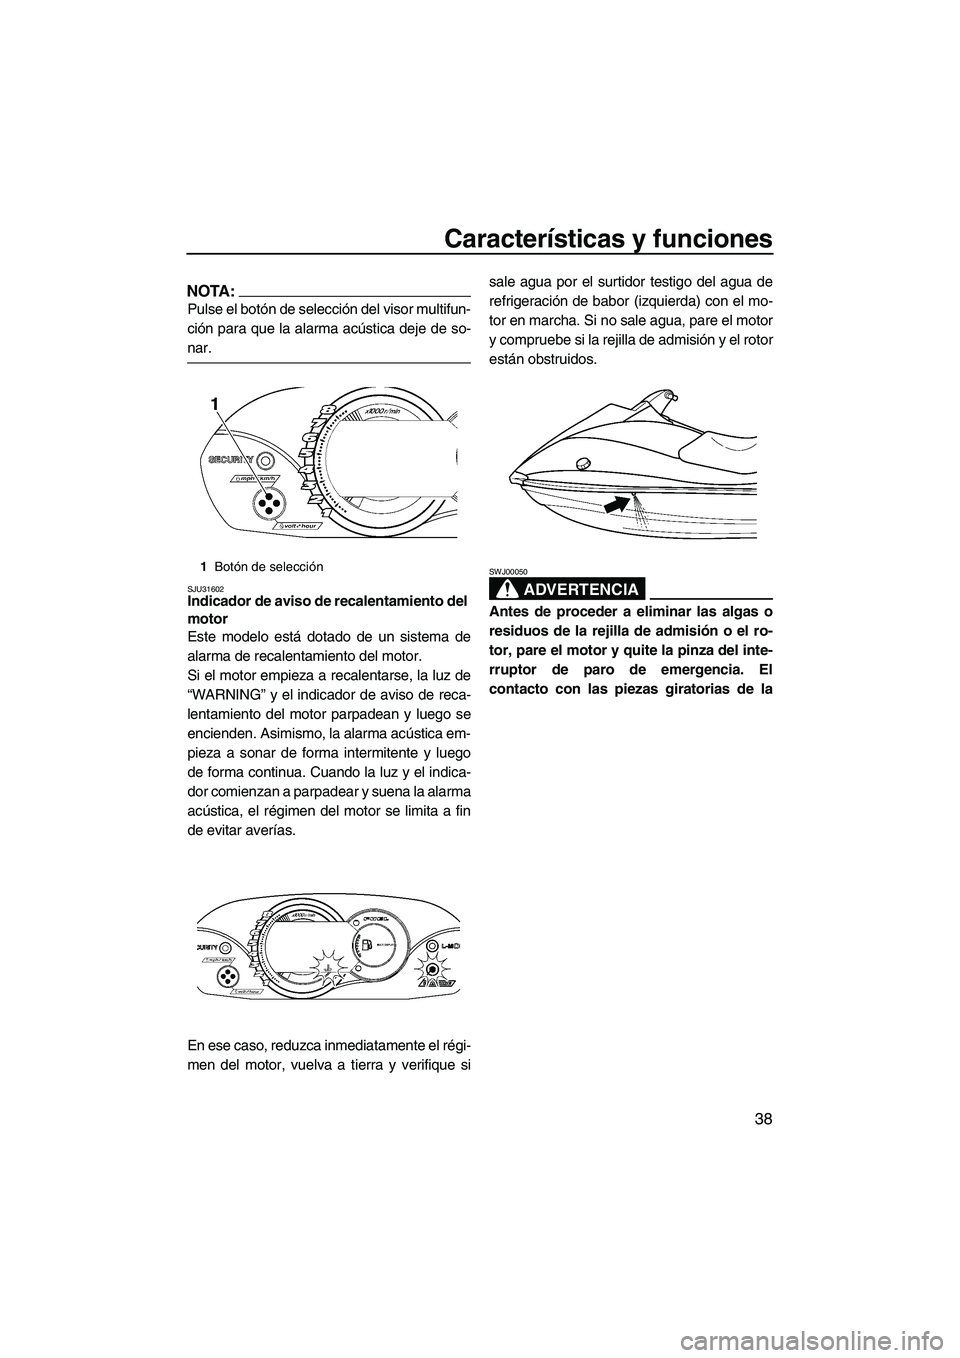 YAMAHA VX 2007  Manuale de Empleo (in Spanish) Características y funciones
38
NOTA:
Pulse el botón de selección del visor multifun-
ción para que la alarma acústica deje de so-
nar.
SJU31602Indicador de aviso de recalentamiento del 
motor 
Es